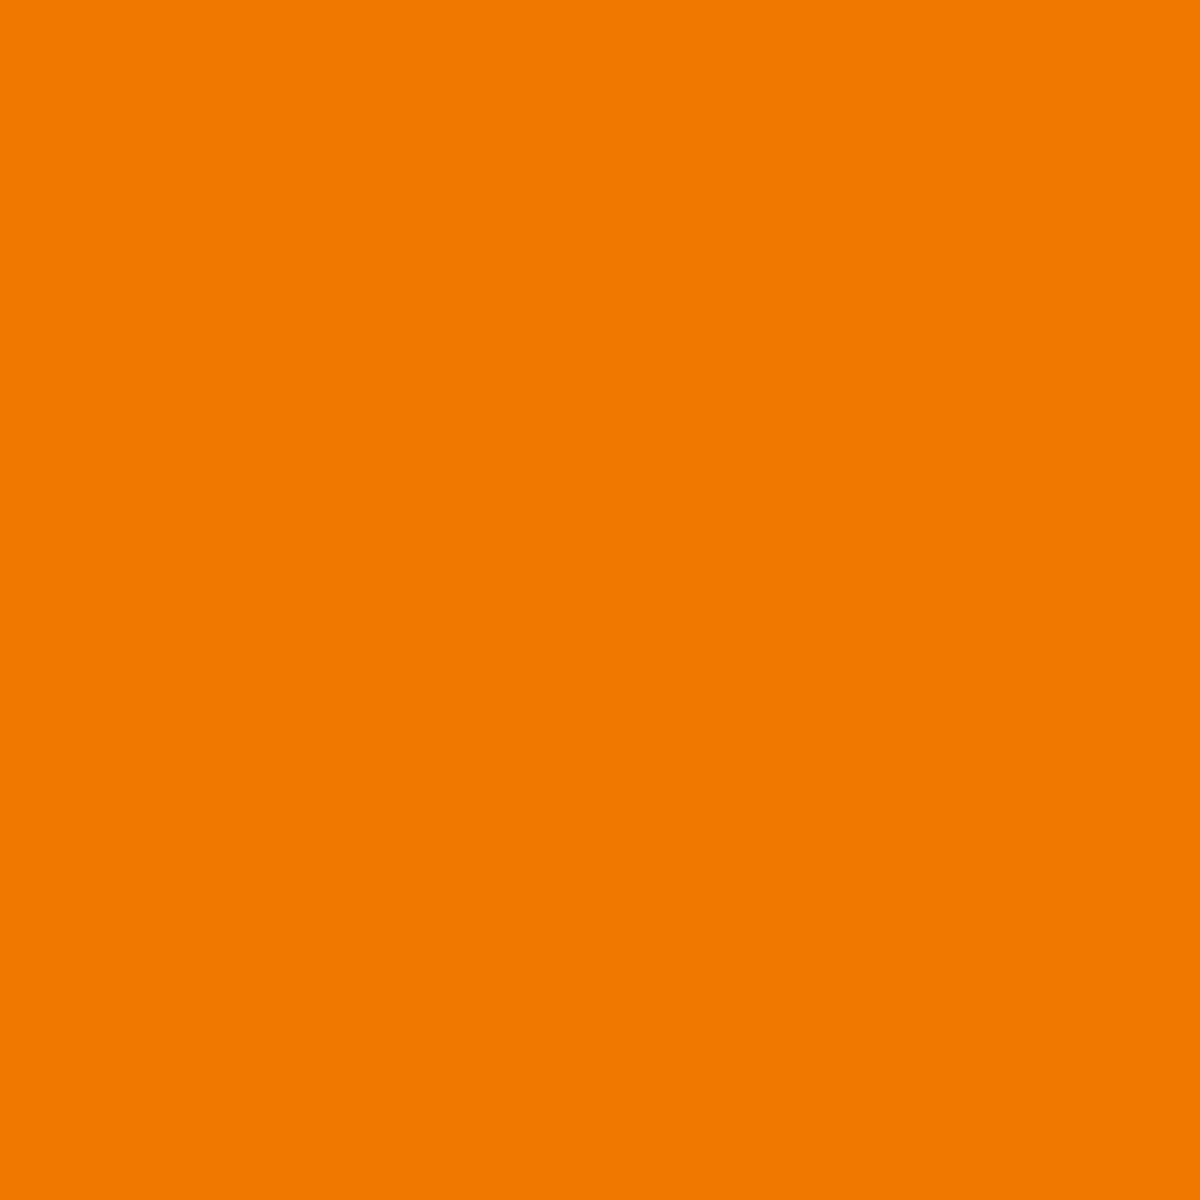 3M Scotchcal Doorschijnende Kleurenfolie 3630-74 Geel-oranje 1,22m x 45,7m